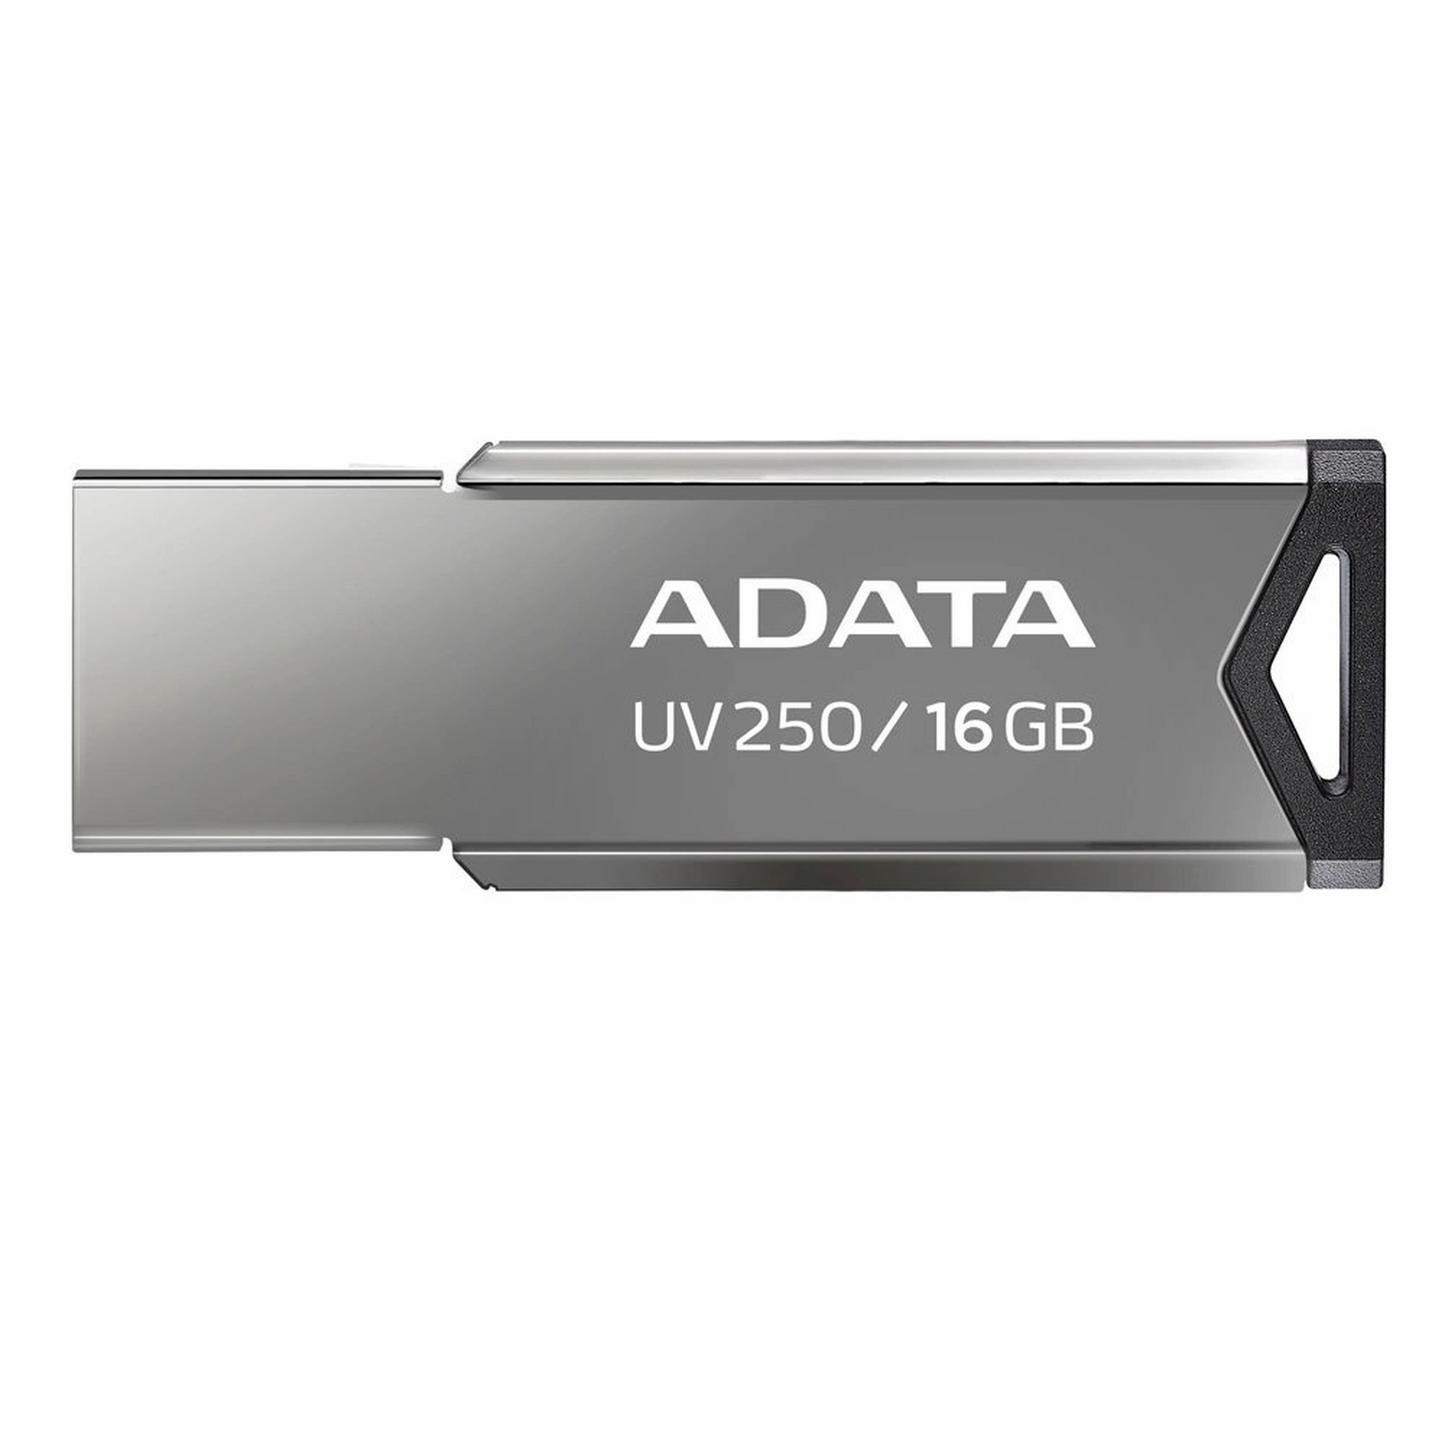 Memoria USB Adata UV250 16GB USB 2.0 Plata sin Tapa